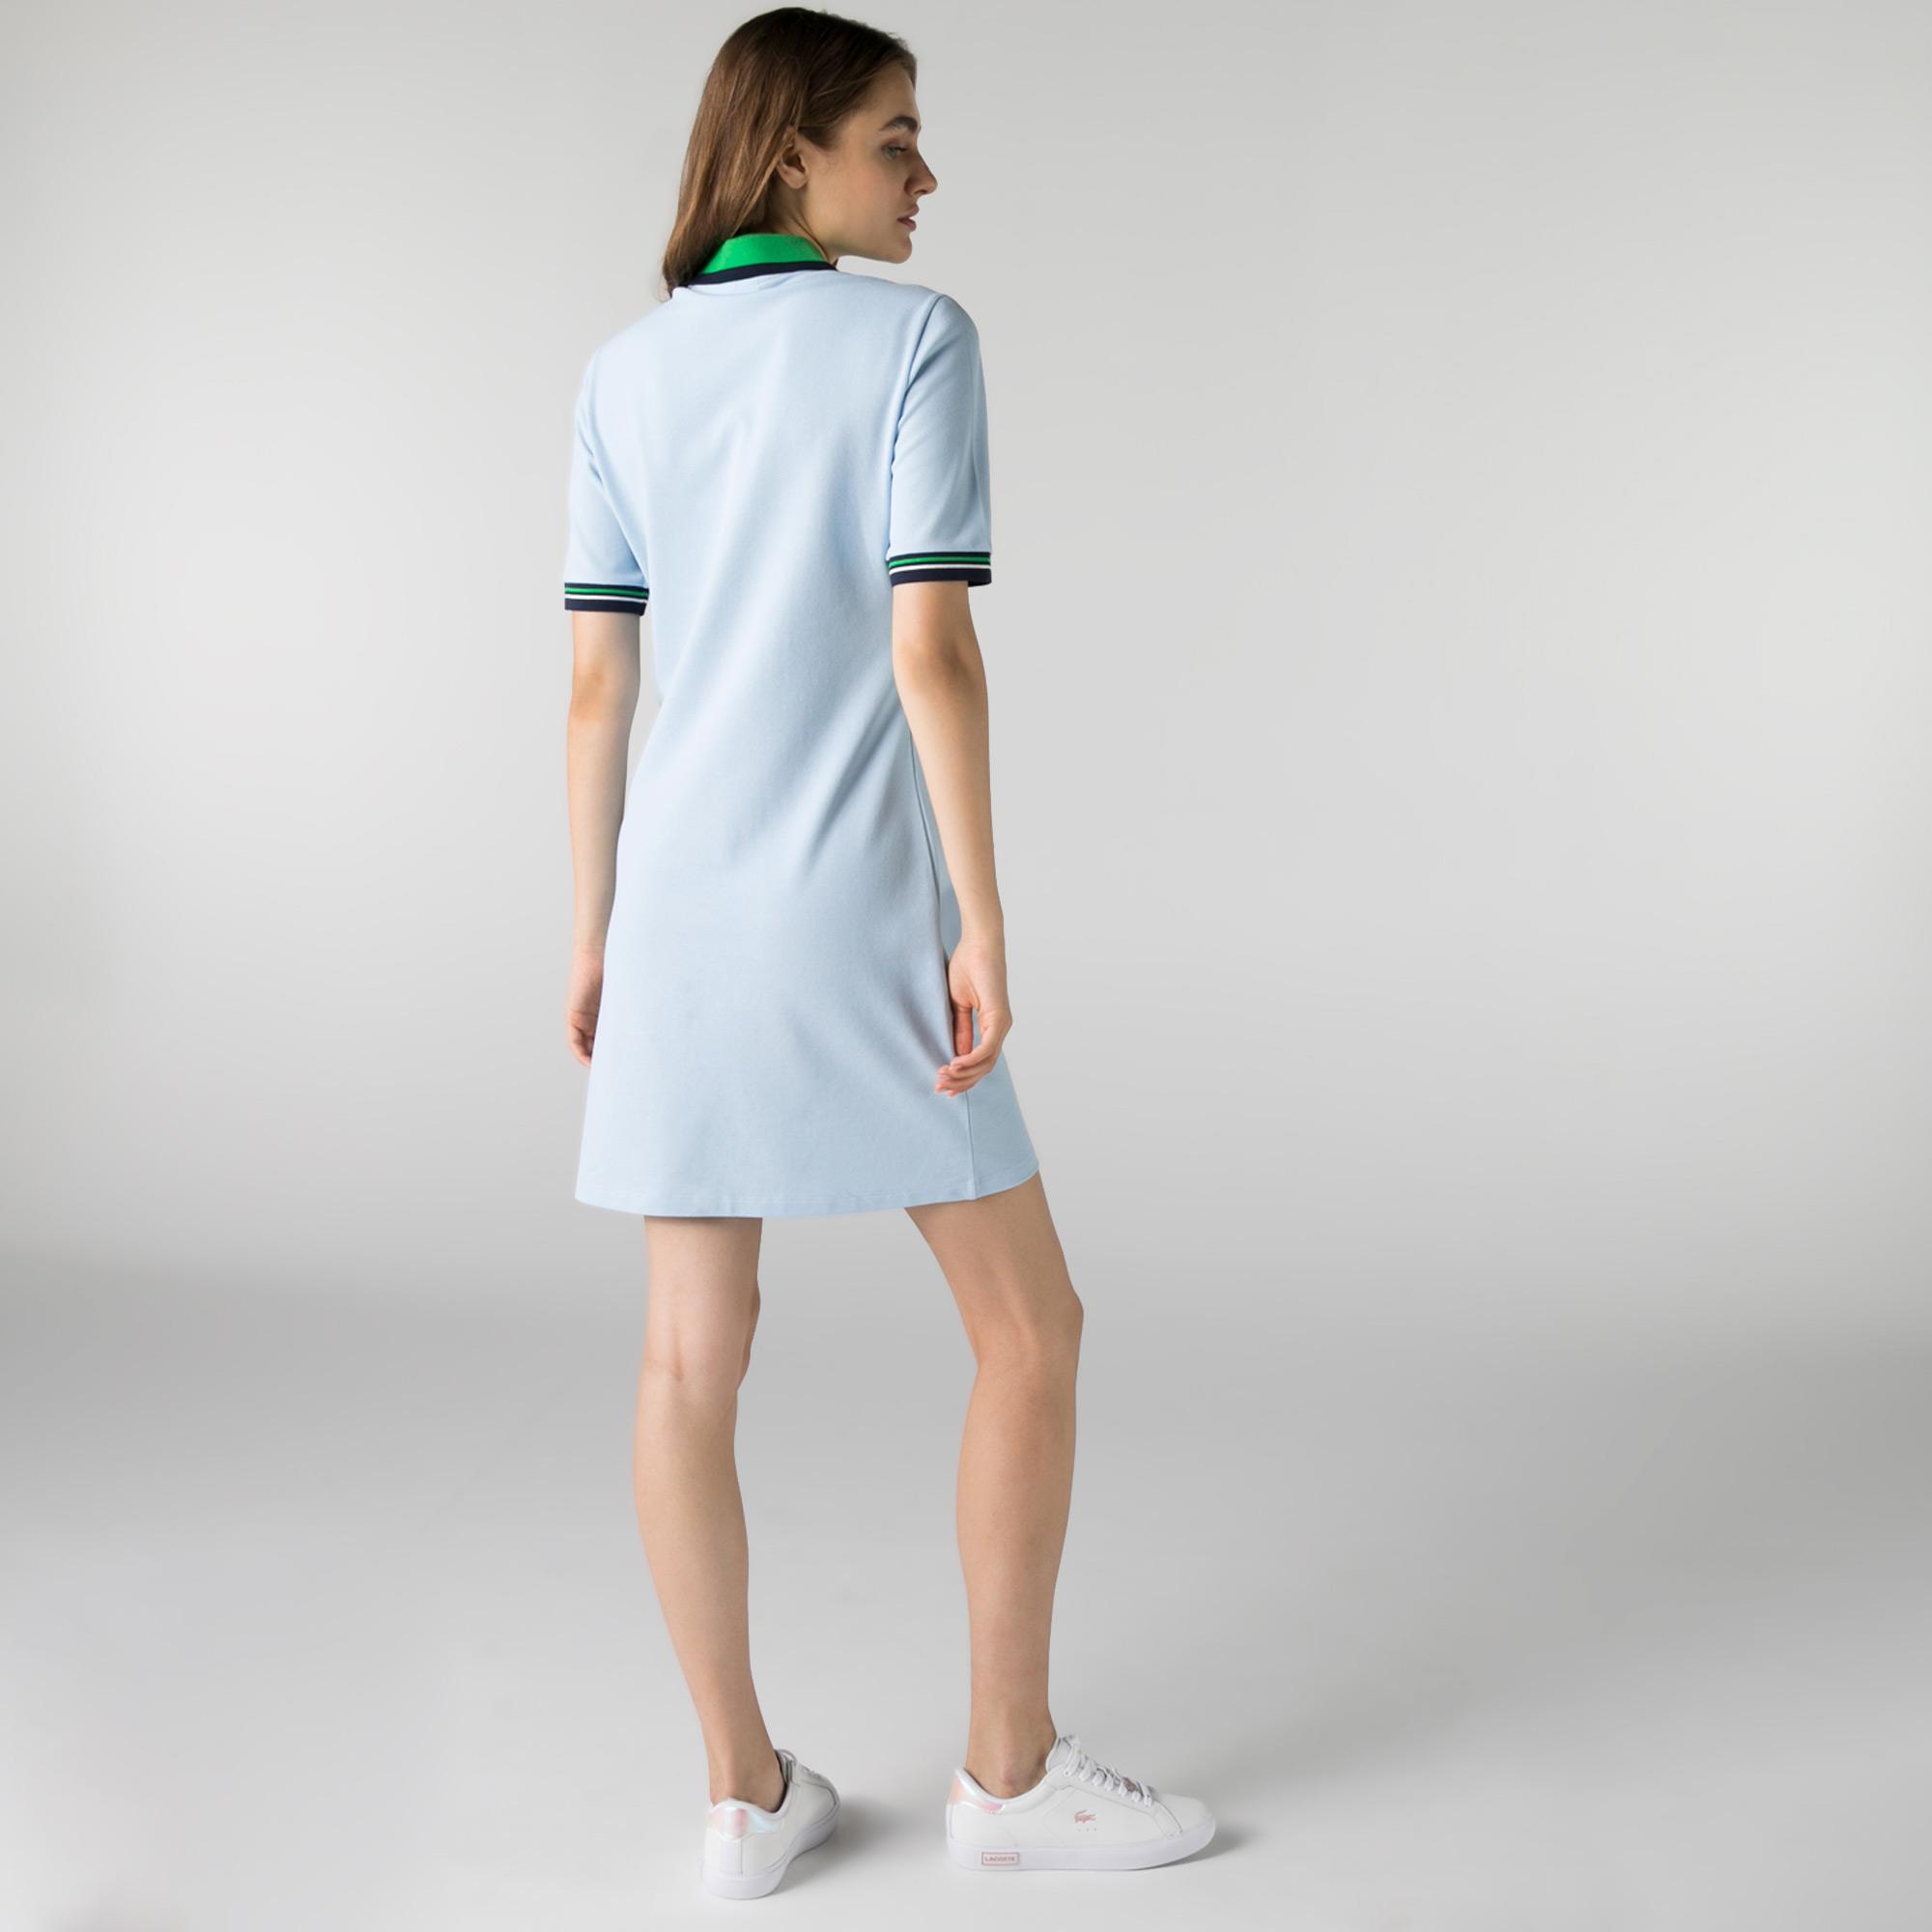 Lacoste Kadın Kısa Kollu Polo Yaka Slim Fit Mavi Elbise. 3